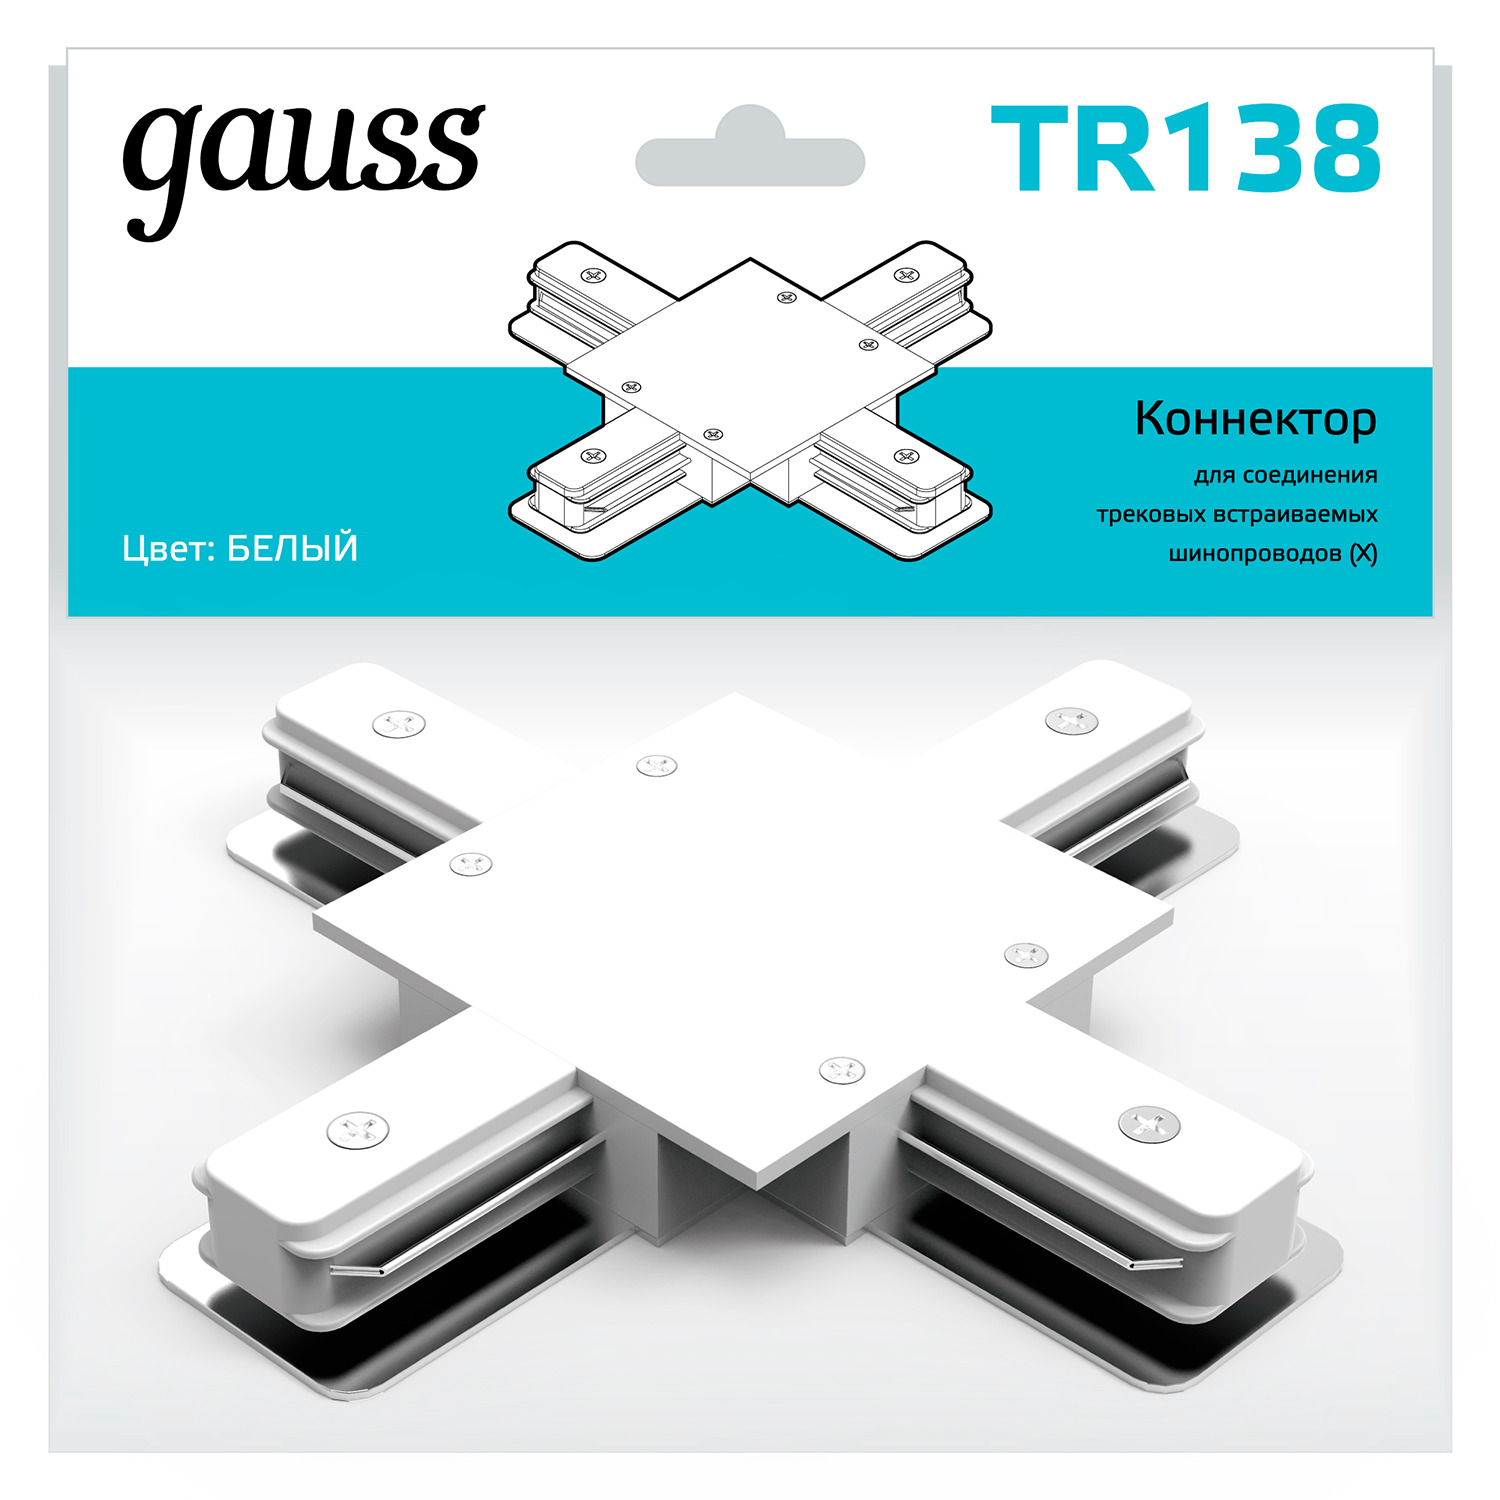 Коннектор Gauss для встраиваемых трековых шинопроводов (+) белый коннектор gauss для трековых шинопроводов t